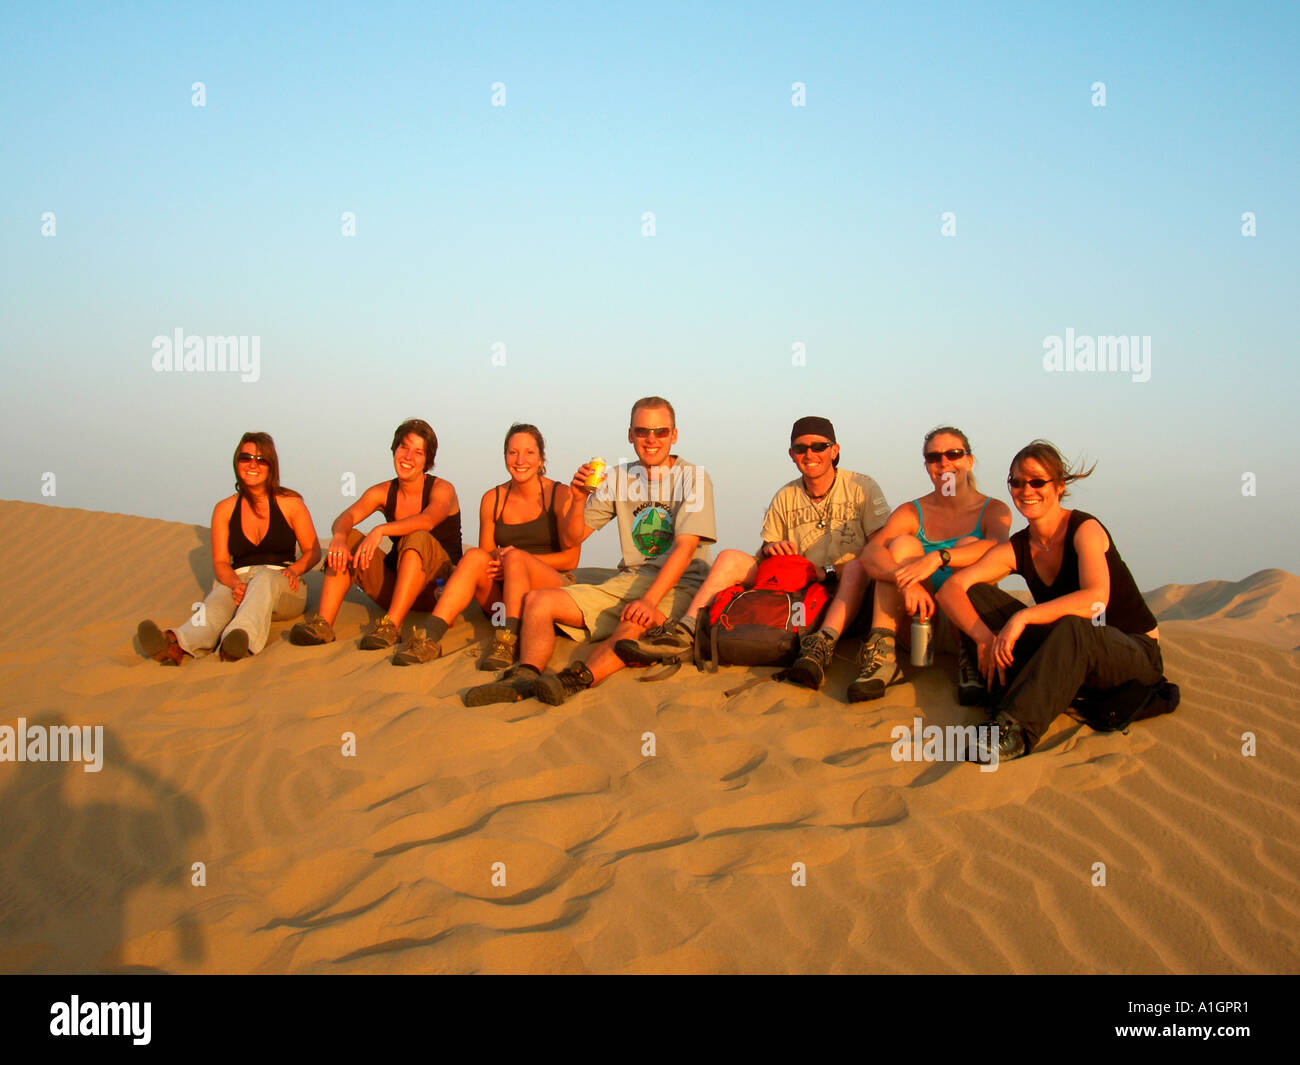 Gruppo di giovani in posa per una fotografia nelle dune sabbiose del deserto peruviano. Foto Stock